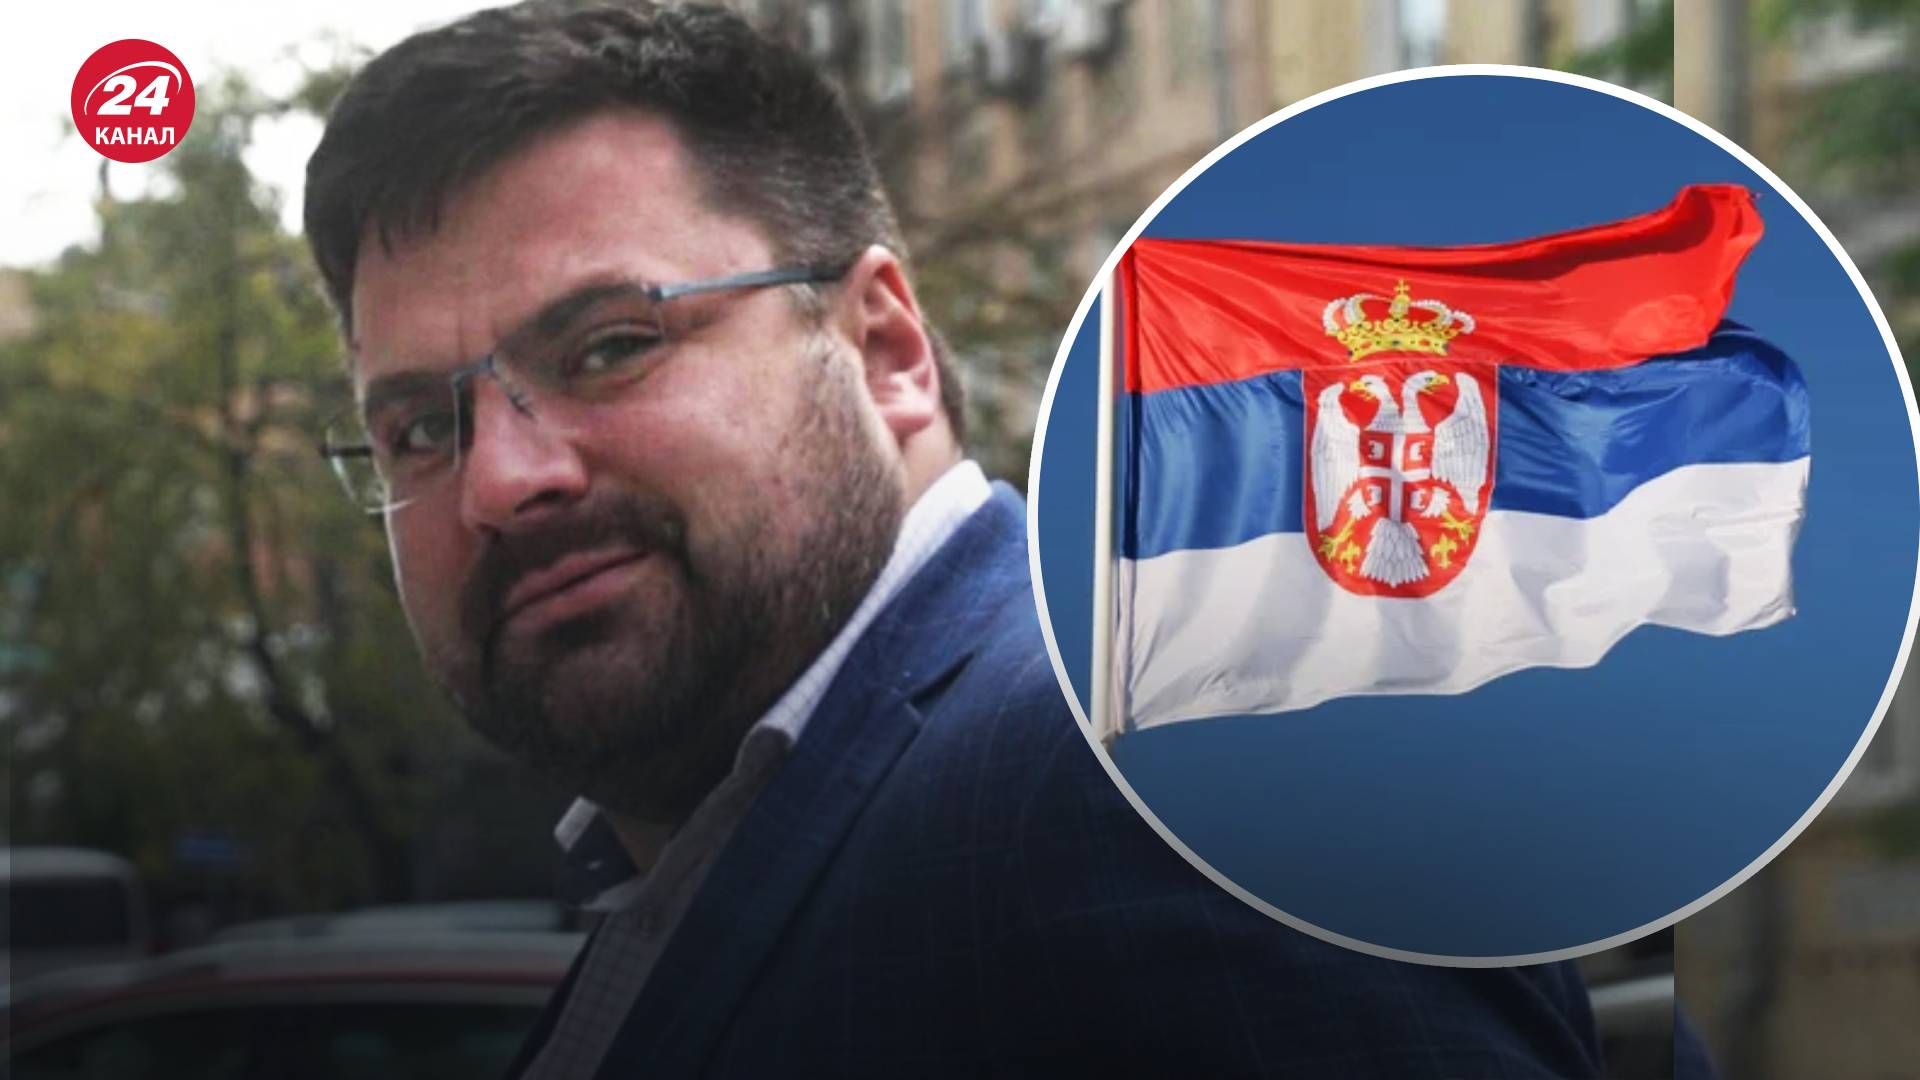 Андрея Наумова могут вернуть в Украину - Сербия получила запрос на экстрадицию